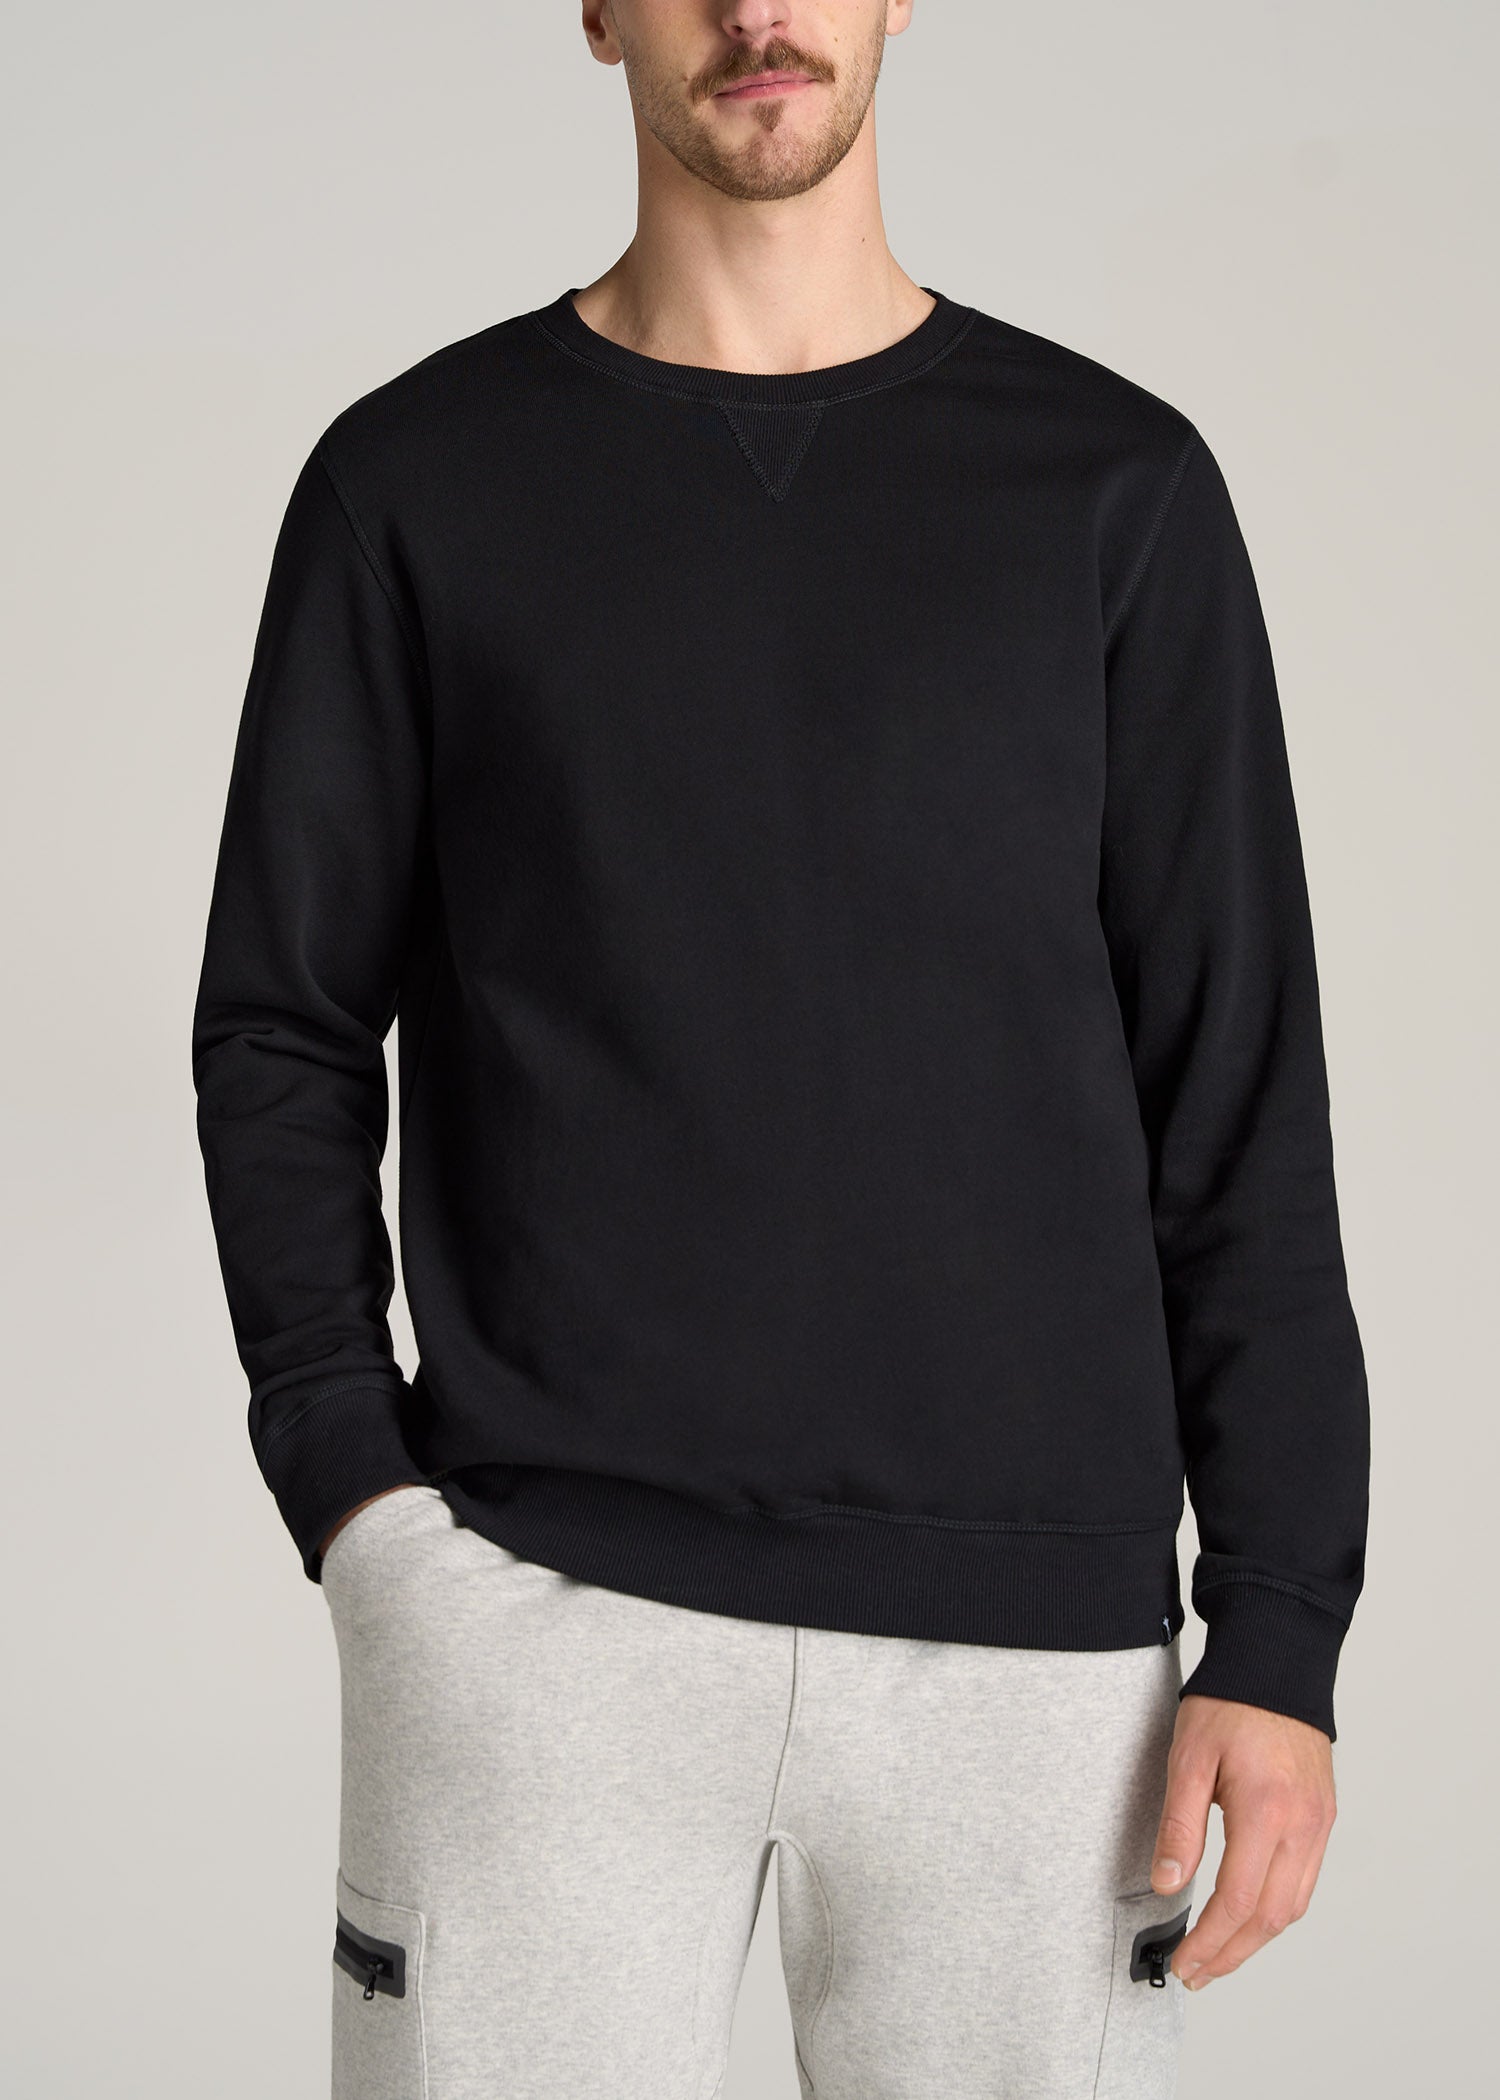 Wearever Fleece Quarter-Zip Tall Men's Sweatshirt in Black